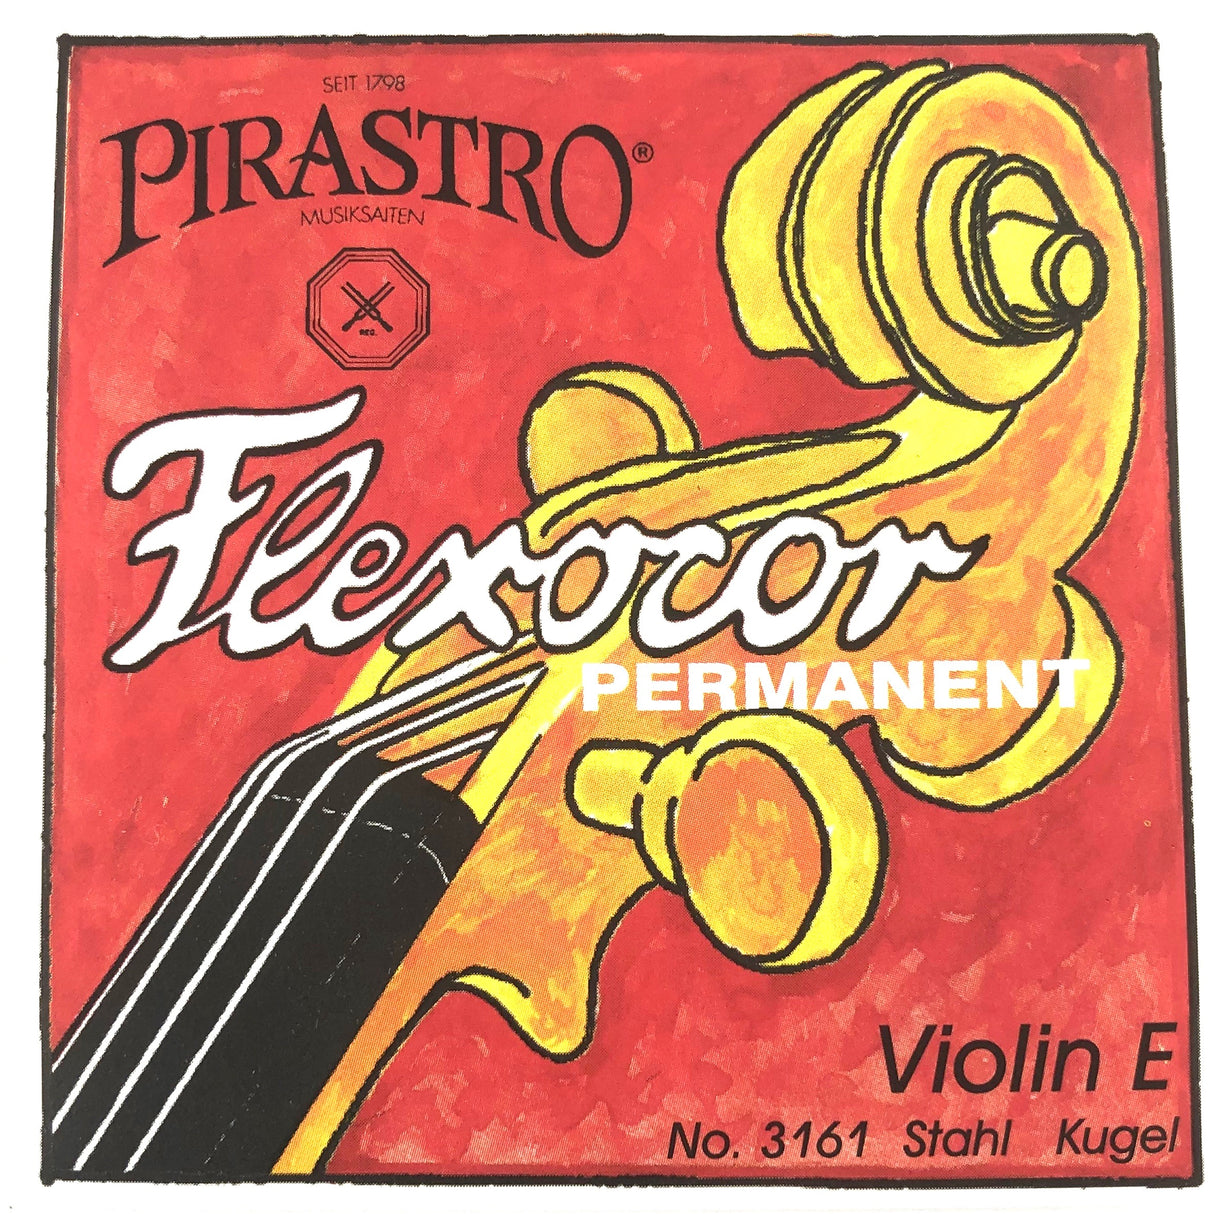 Pirastro Flexocore Permanent Violinsaiten Satz 4/4 - Musik-Ebert Gmbh